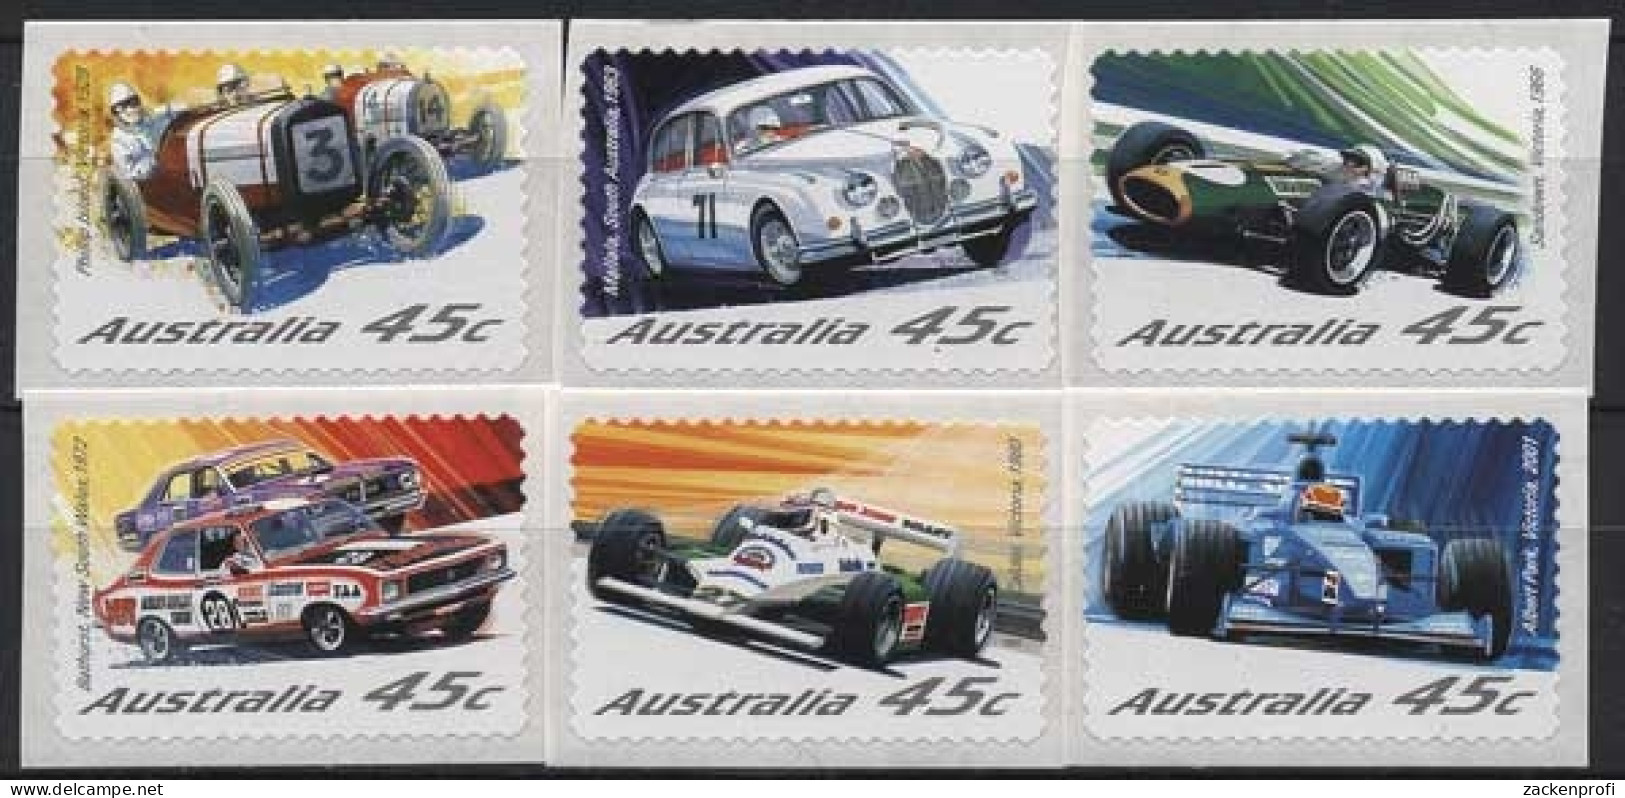 Australien 2002 Automobilrennsport 2119/24 Postfrisch - Mint Stamps